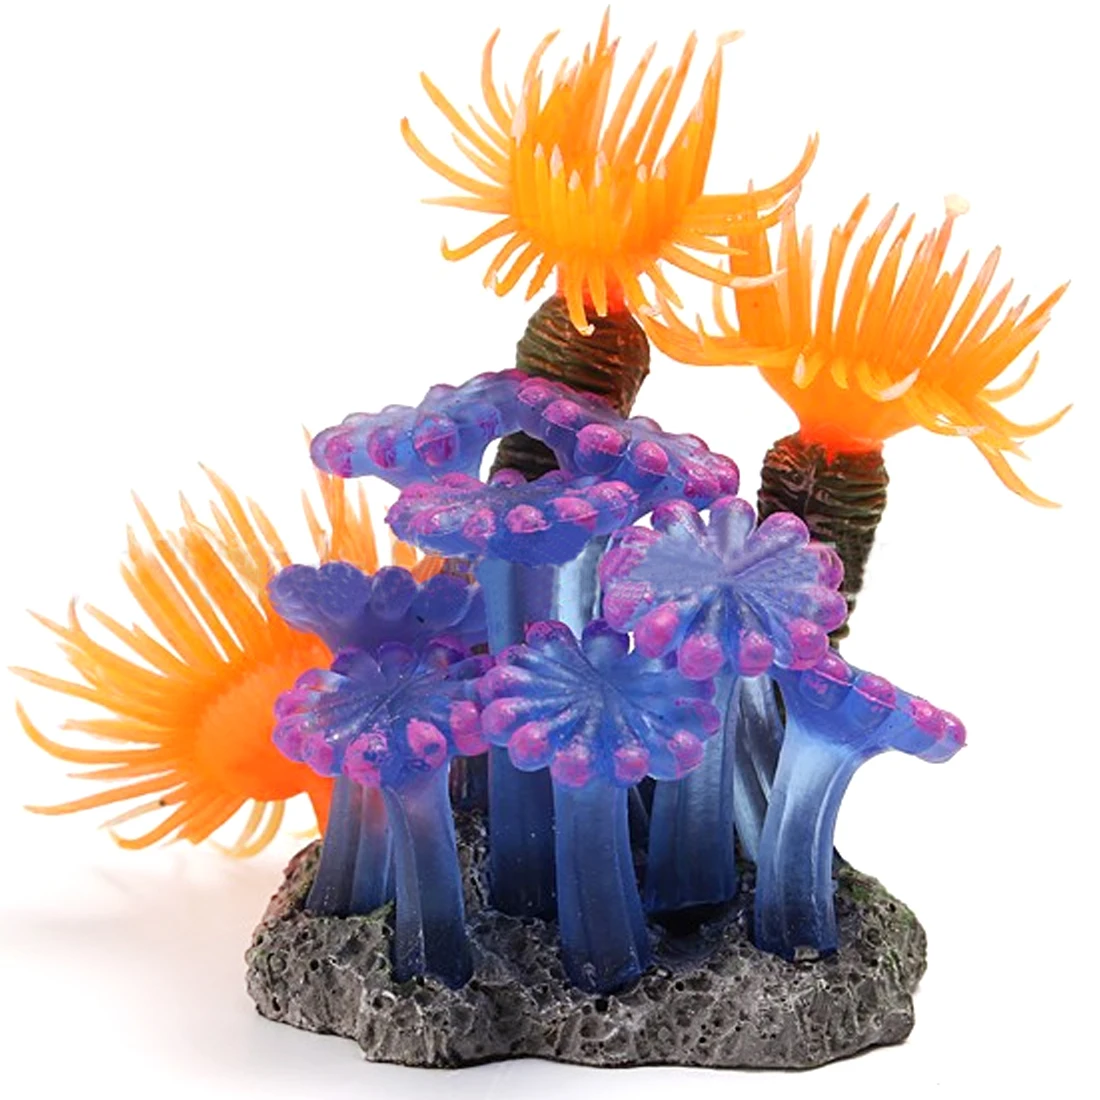 Искусственная Смола морской Ежи ландшафтный дизайн для аквариума декор-оранжевый+ прупле - Цвет: Orange and Pruple